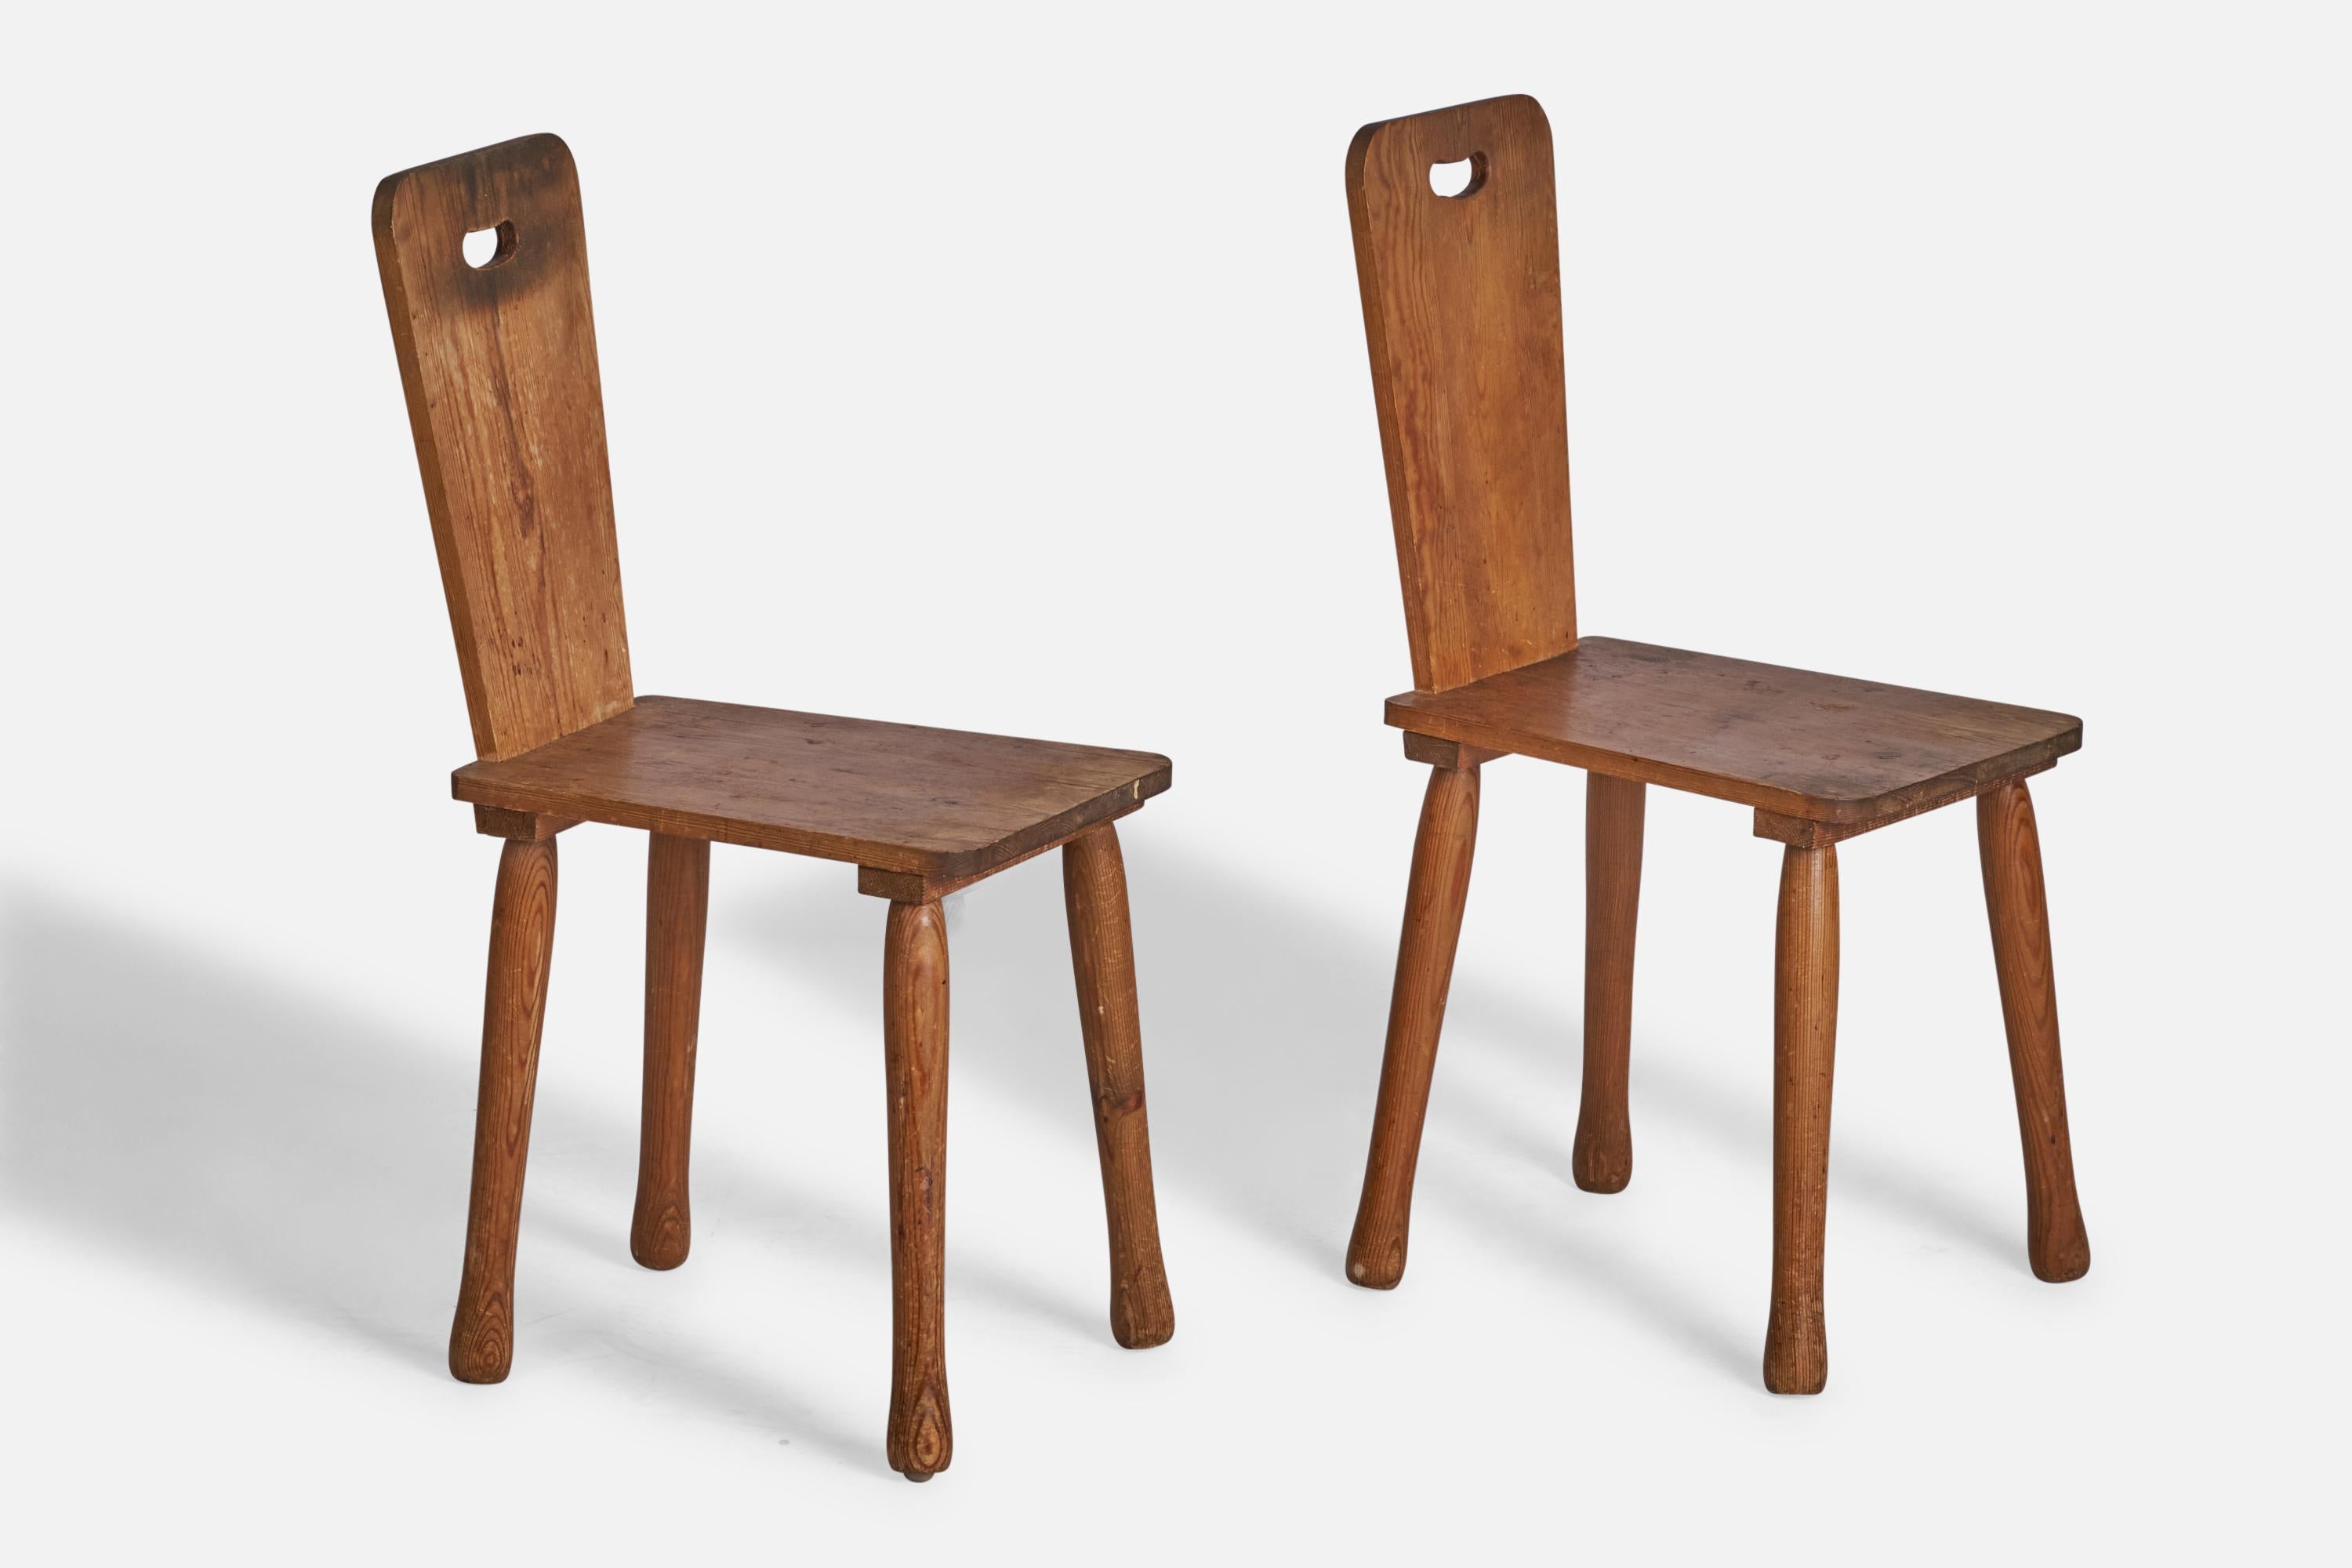 Ein Paar Beistellstühle aus Kiefernholz, entworfen und hergestellt in Schweden, 1940er Jahre.

Sitzhöhe: 18